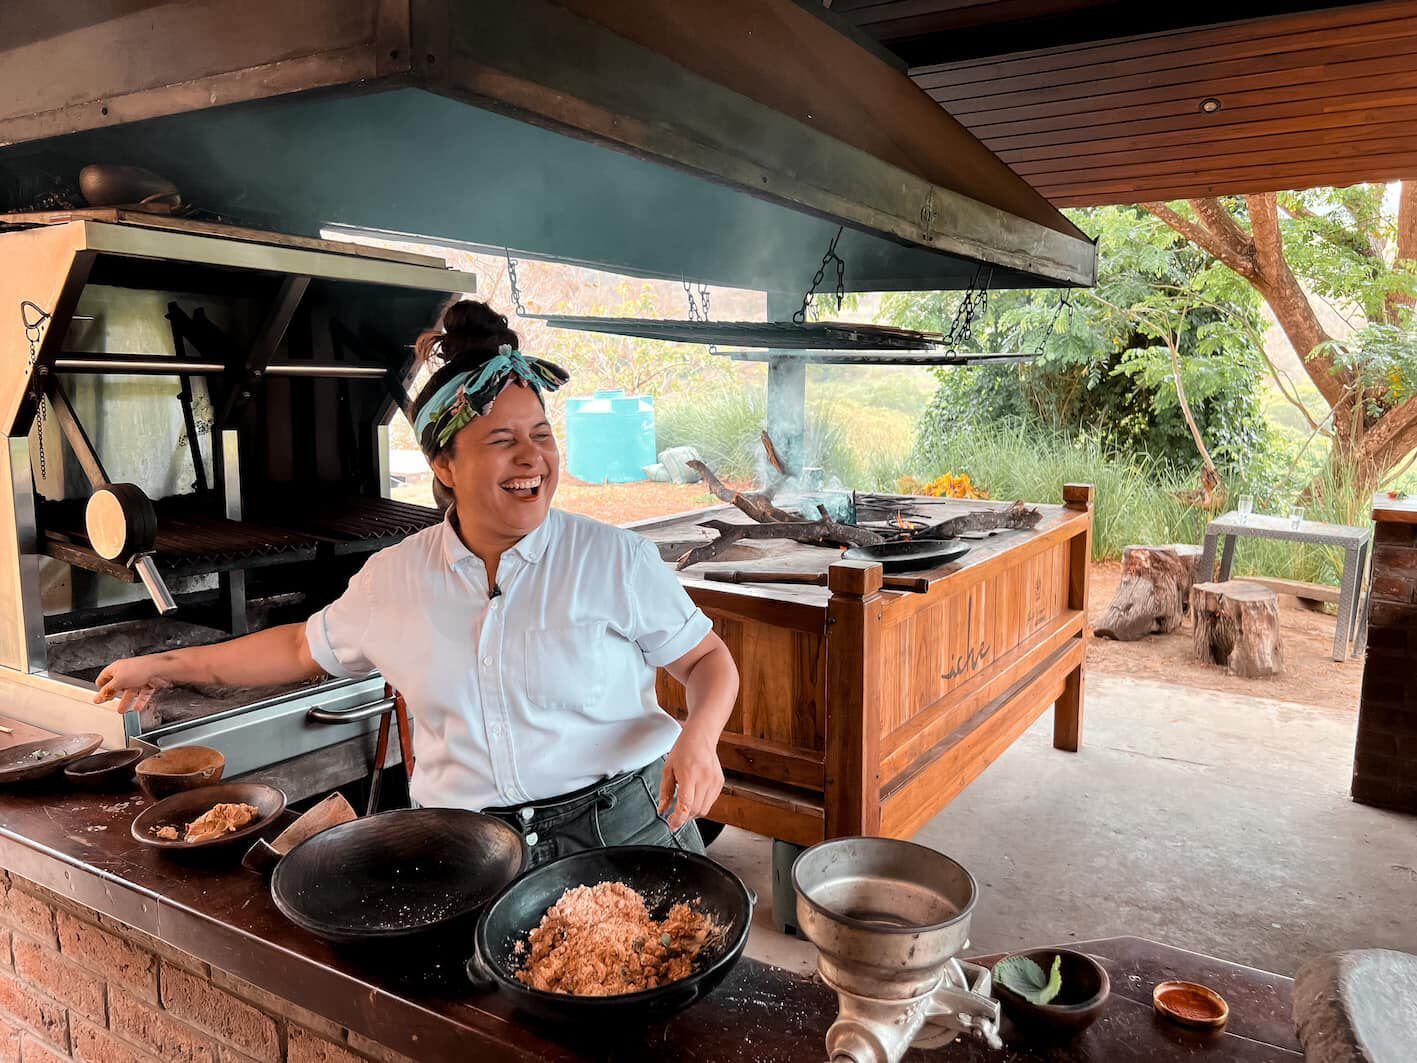 Fotografía cedida por la Fundación Fuegos, donde se ve a la chef  Valentina Álvarez preparar un plato típico en el restaurante Iche, en la zona costera de Jama, provincia de Manabí. 